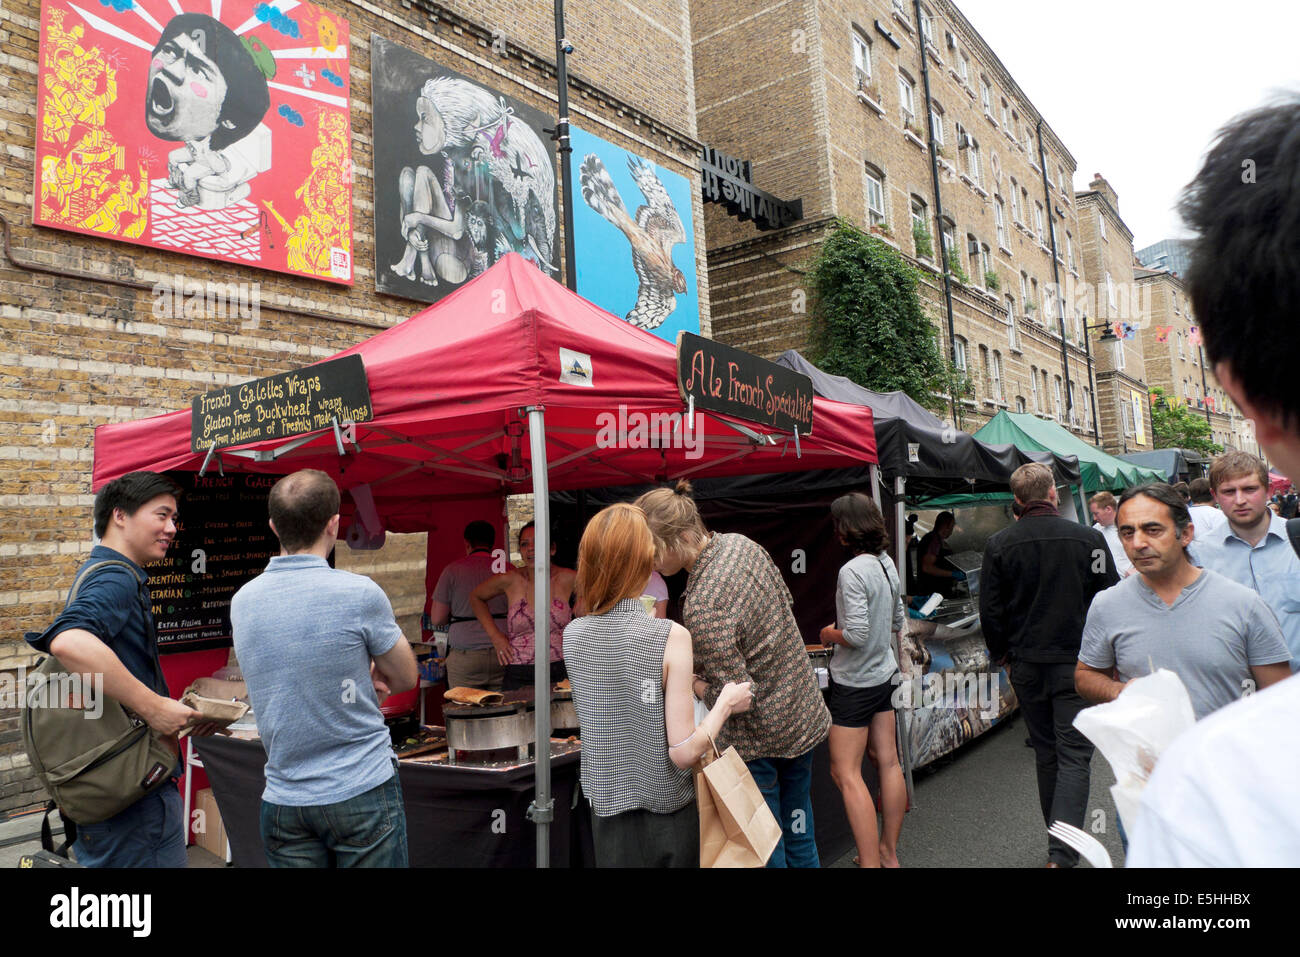 Leute, die am Straßenmarkt in Whitecross Street Islington Essen kaufen, London EC1 England Großbritannien KATHY DEWITT Stockfoto